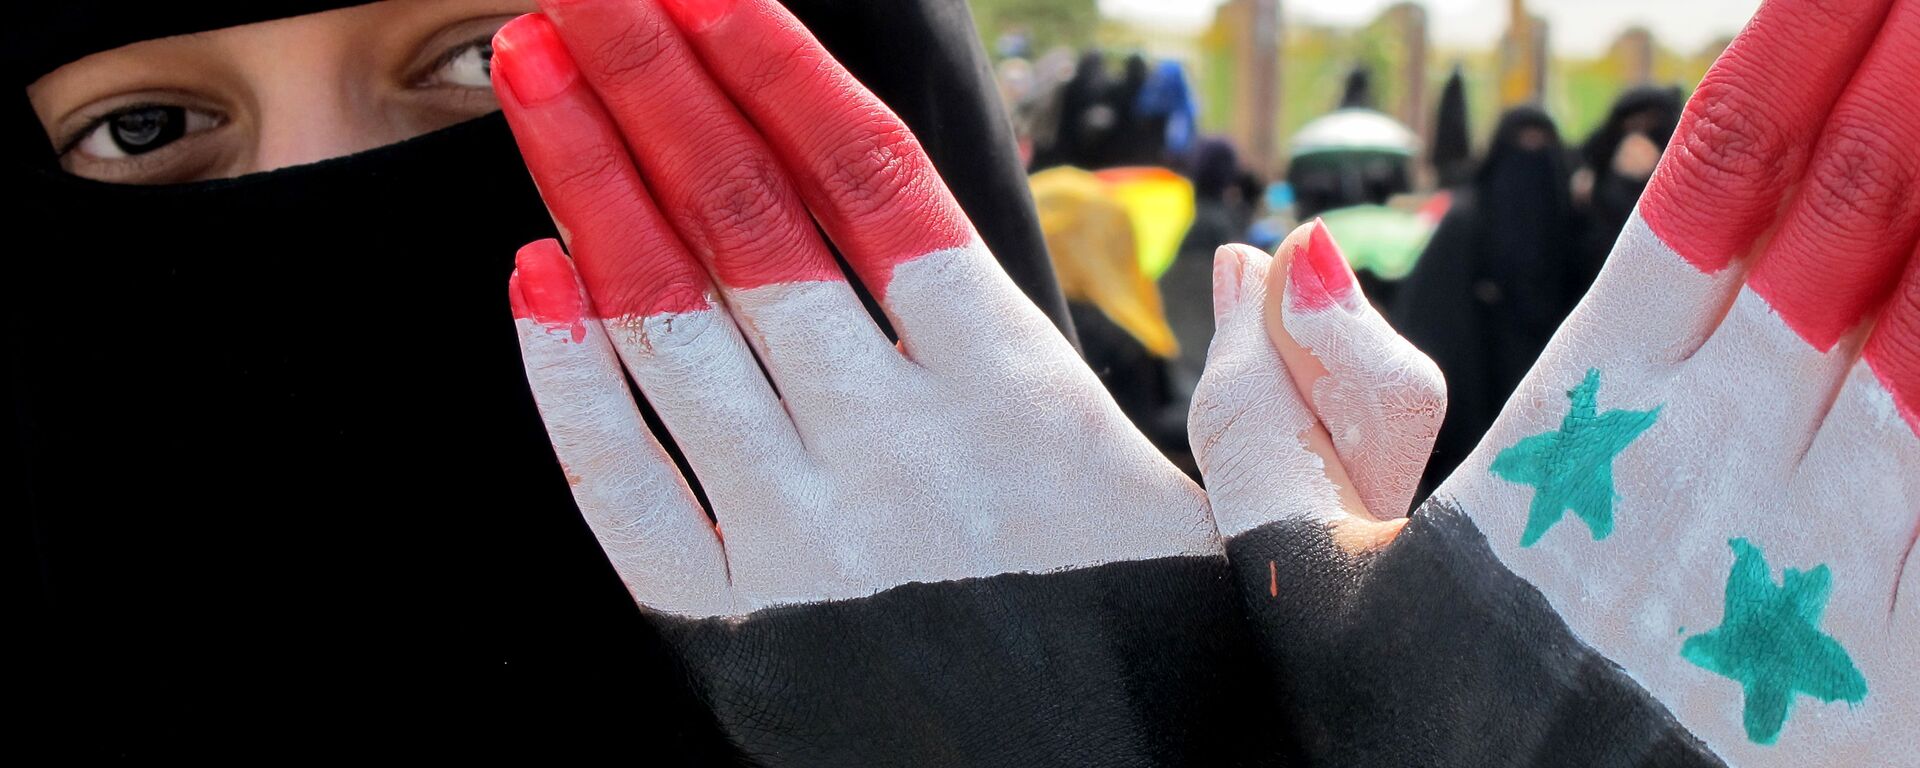 امرأة تظهر كفة يدها المرسوم عليها ألوان العلمين اليمني والسوري خلال مظاهرة حاشدة ضد حكم الرئيس علي عبد الله صالح في العاصمة اليمنية صنعاء، 4 نوفمبر 2011 - سبوتنيك عربي, 1920, 26.12.2021